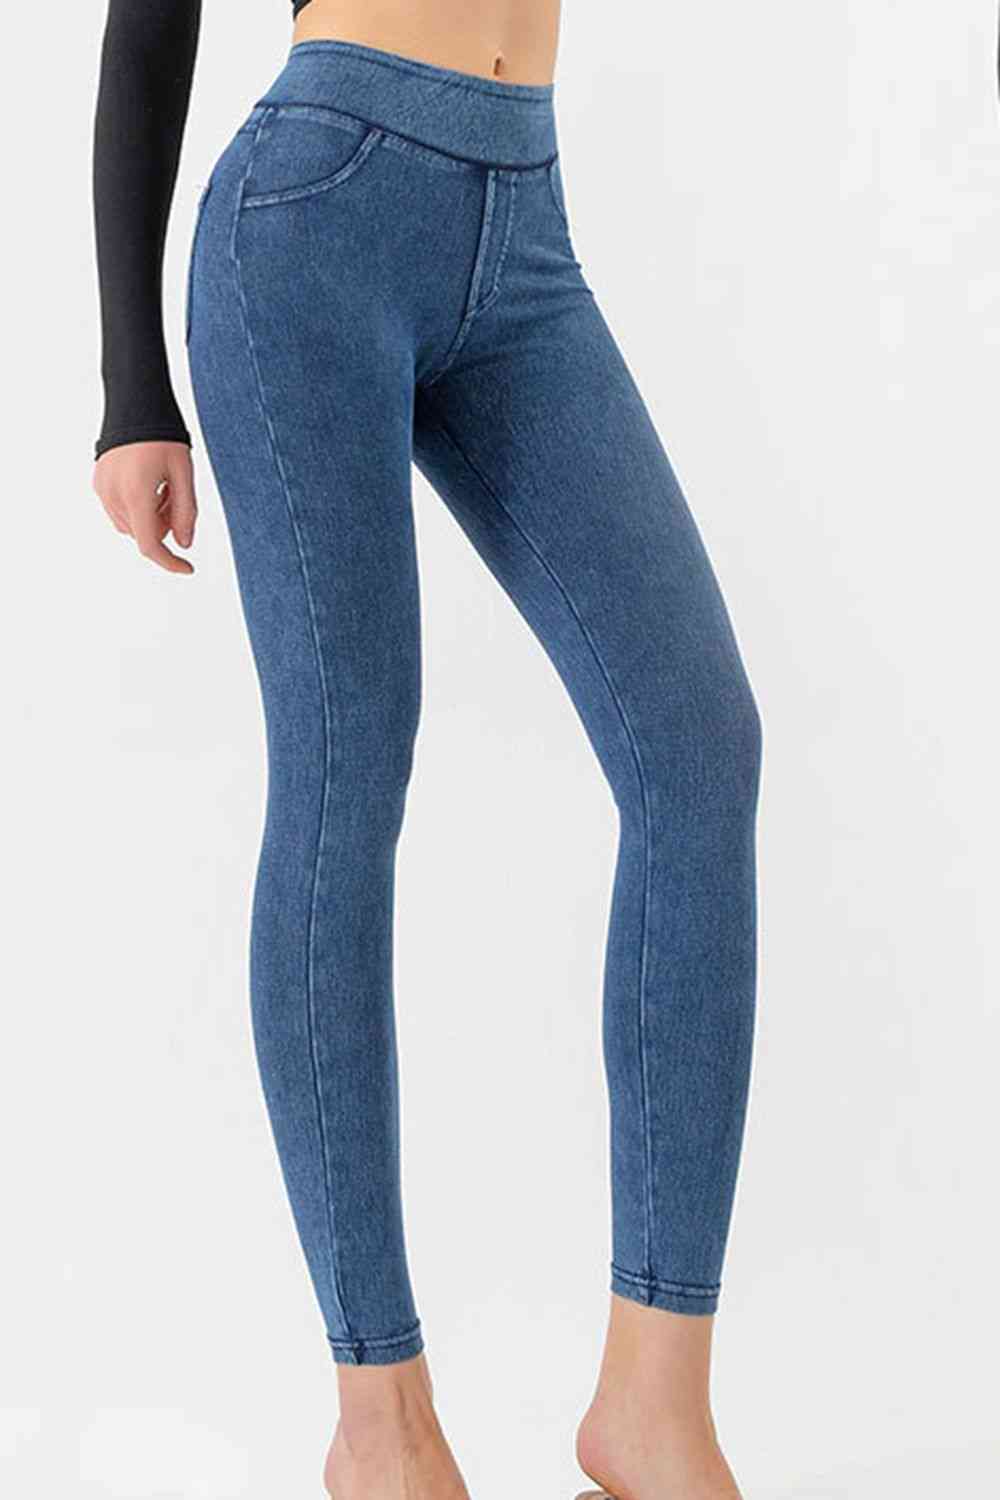 High Waist Skinny Jeans | AdoreStarr